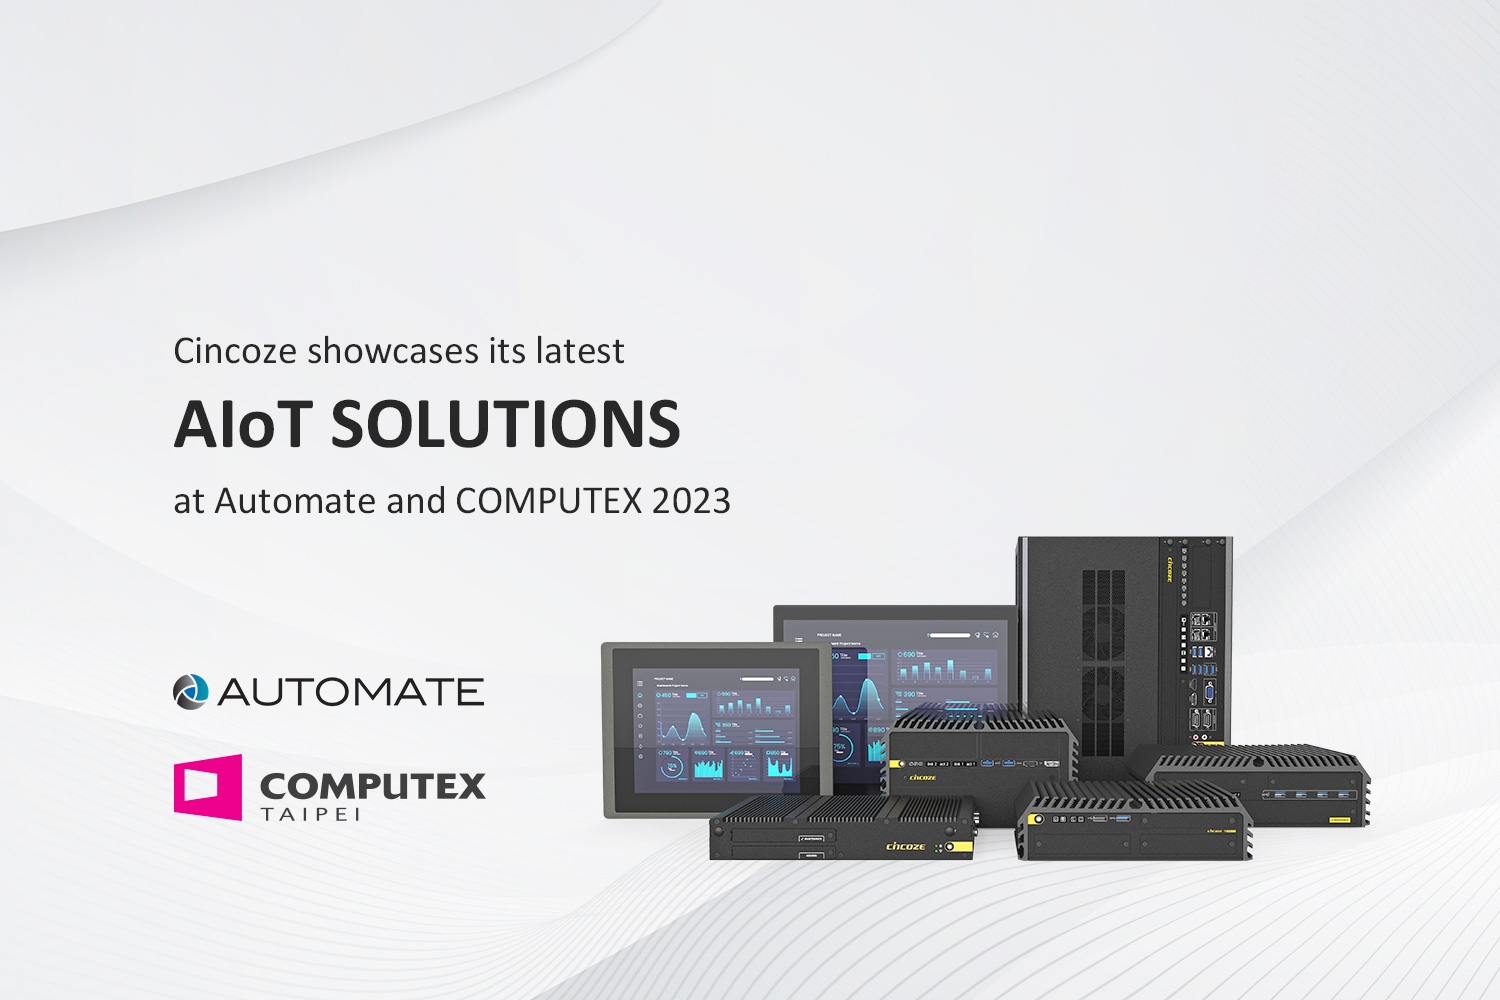 五月科技盛宴 - Cincoze 德承 Automate 与 COMPUTEX 双展亮相全新 AIoT 产品解决方案